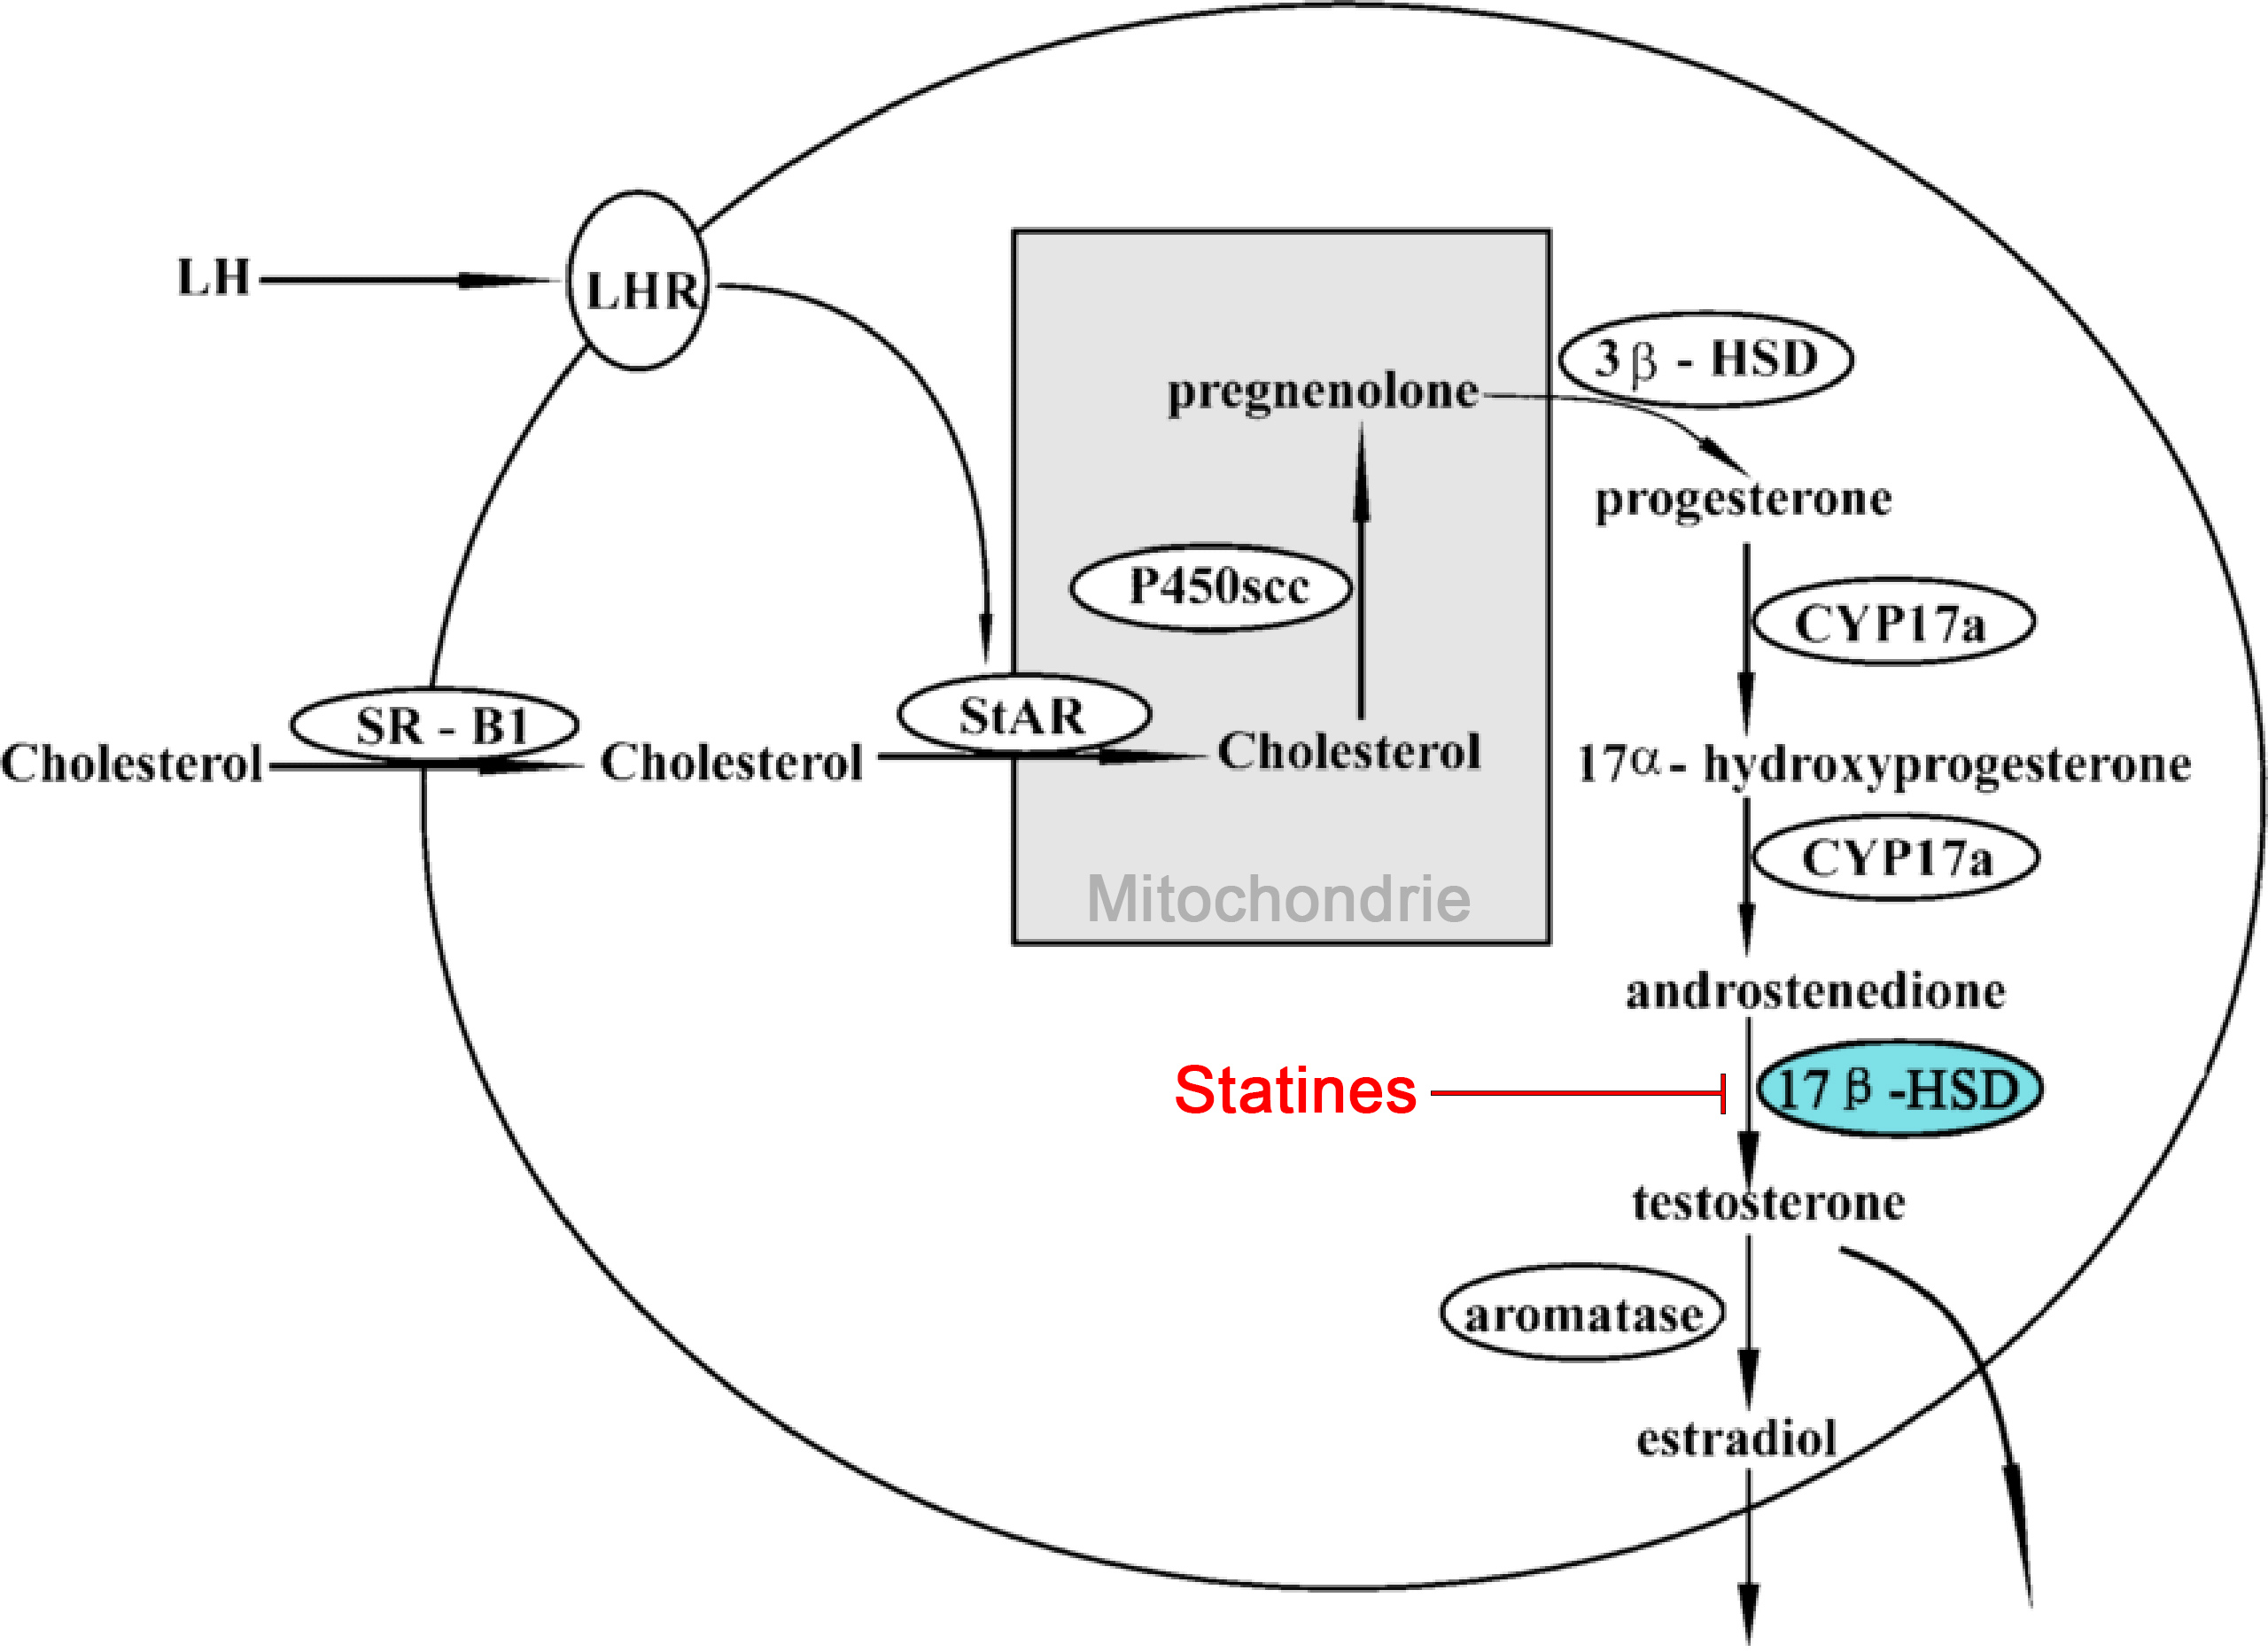 Les statines bloquent la production de testostérone à partir de l'androsténedione